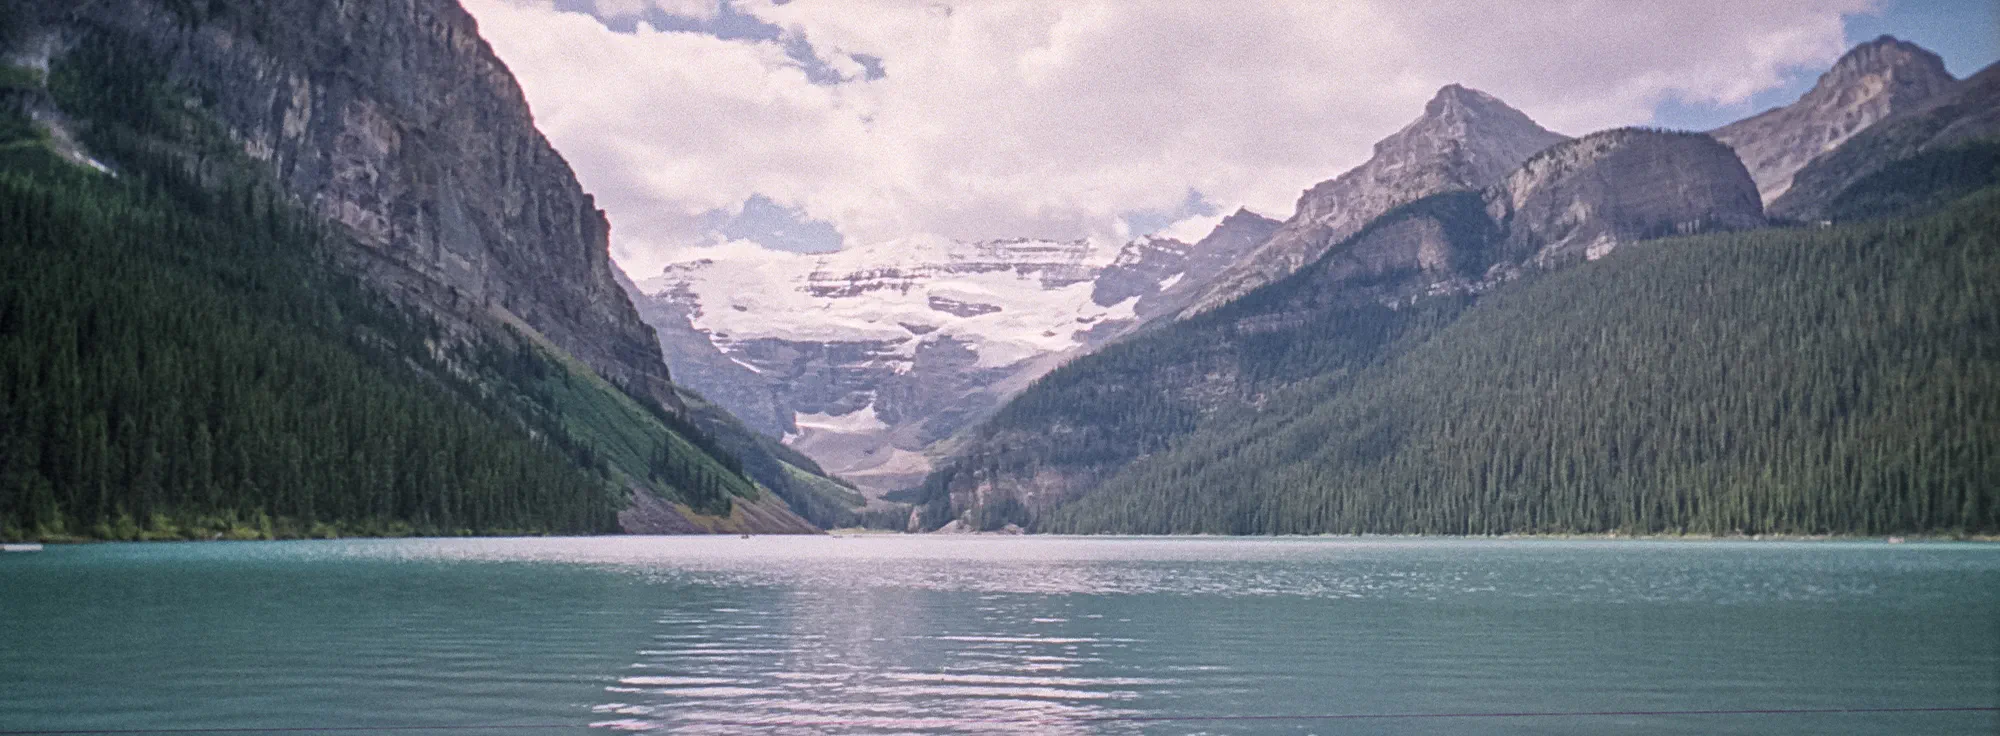 Lake Louise, 1997